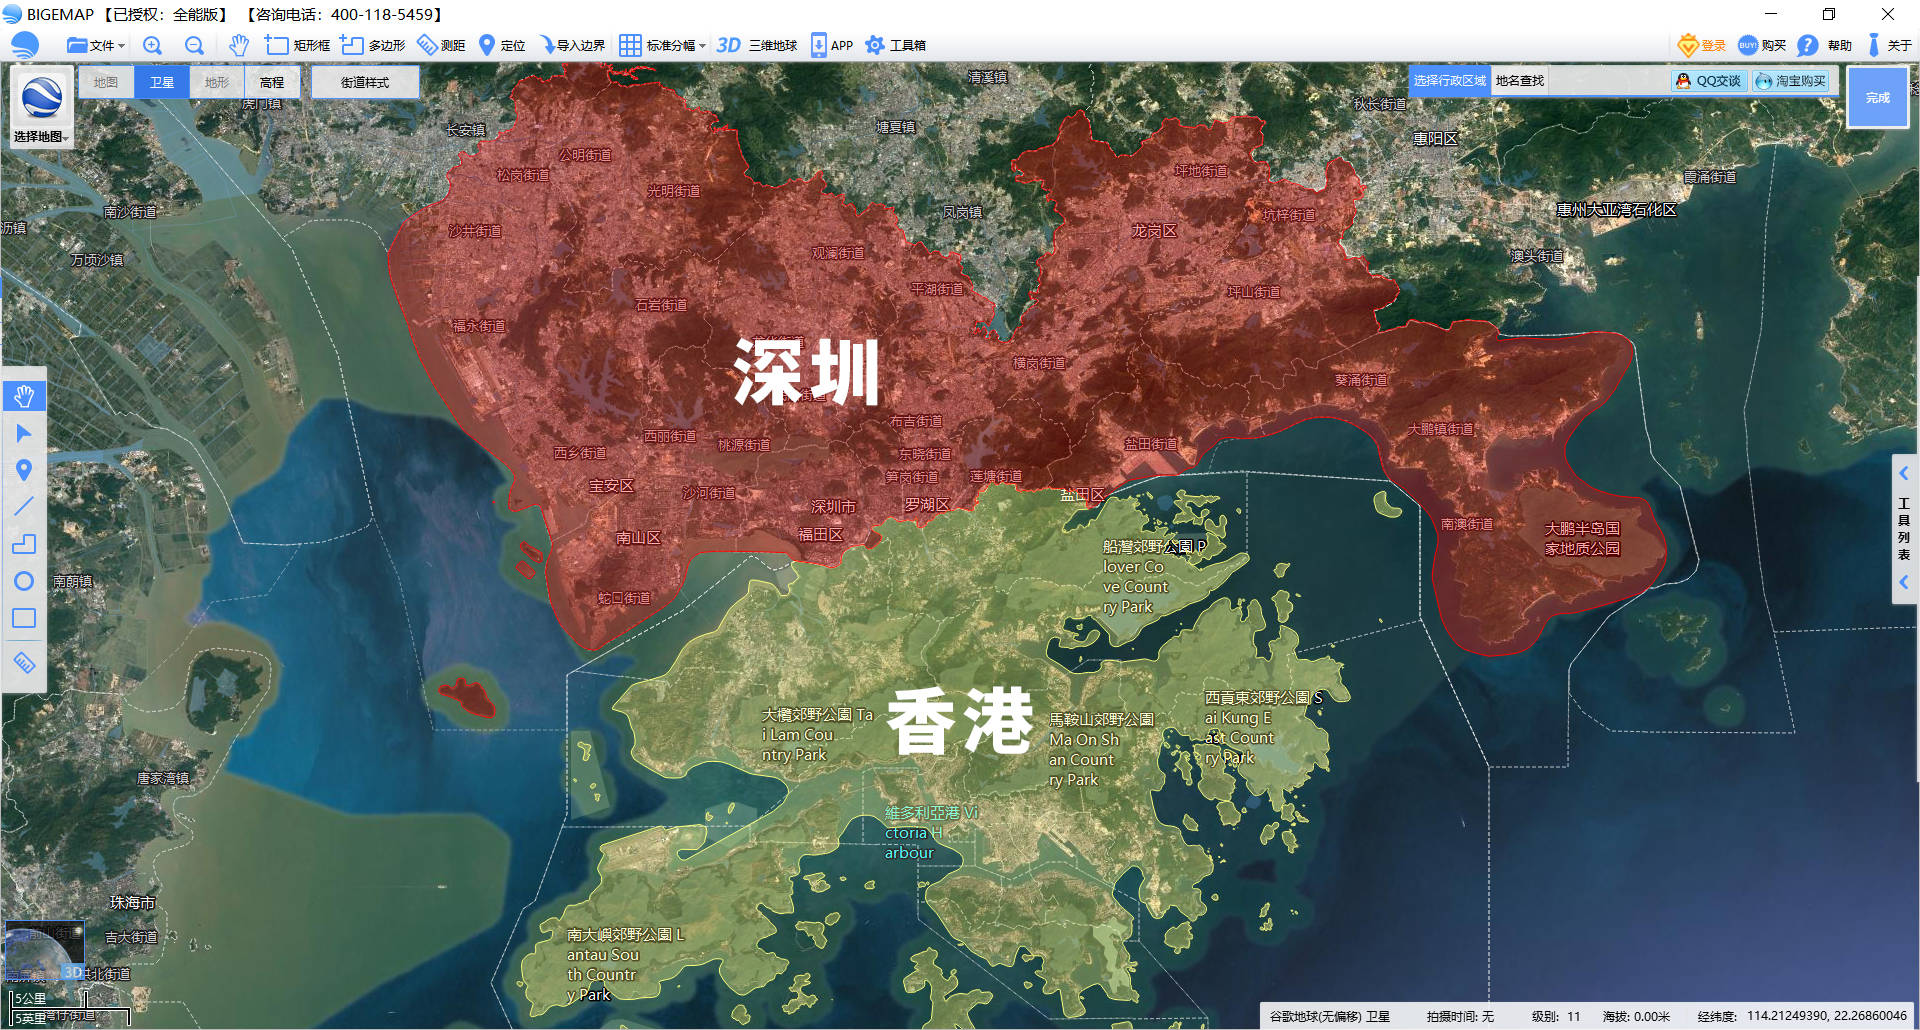 从卫星地图看深圳四十年的变化从小渔村到大都市